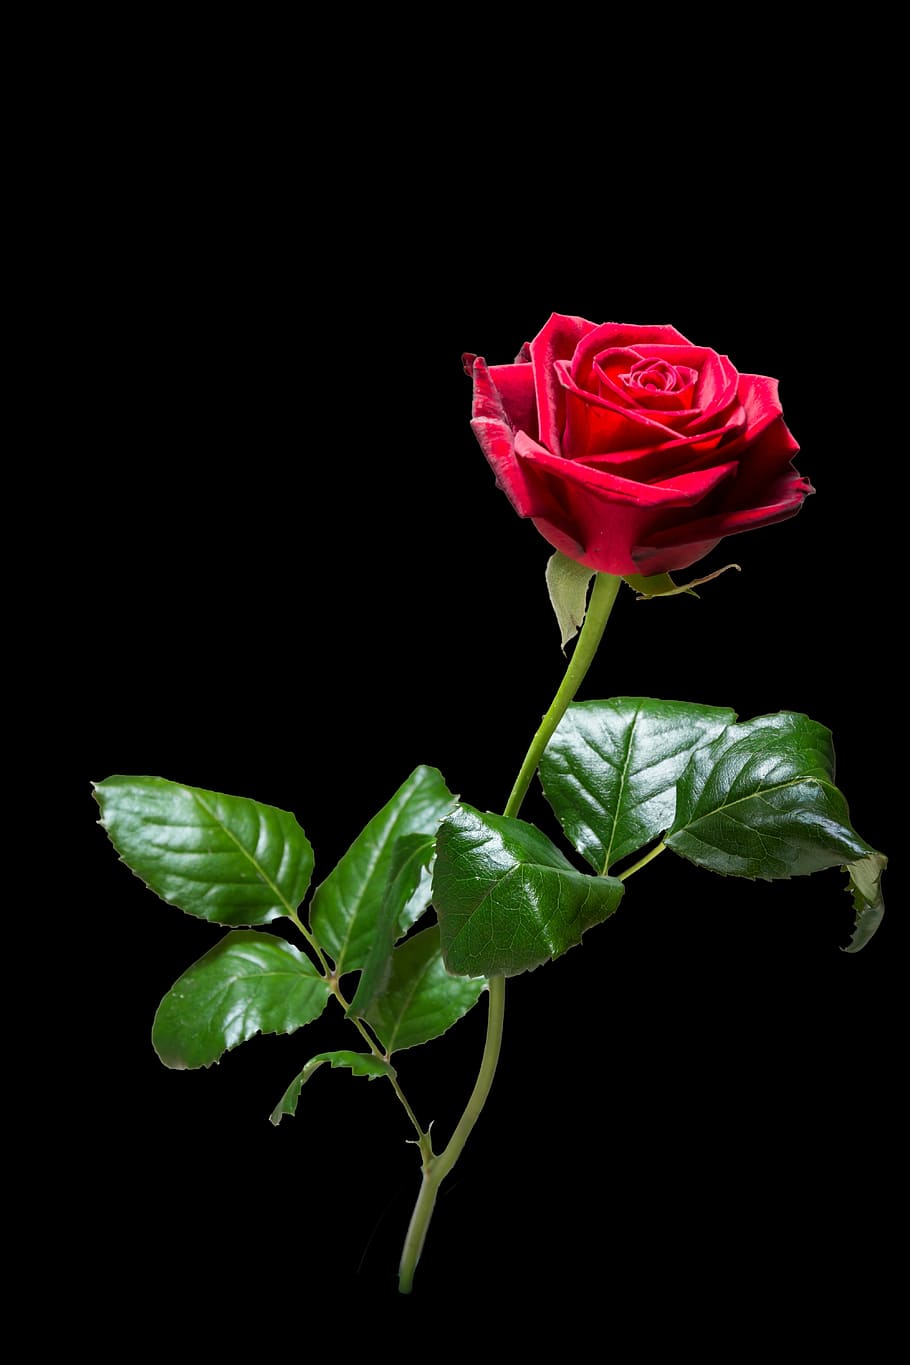 Hoa hồng lai - Cùng chiêm ngưỡng những bông hoa hồng đầy màu sắc, lạ mắt và đẹp đến mức không thể tả nổi với hình ảnh hoa hồng lai. Hình ảnh này sẽ giúp bạn tìm hiểu thêm về những loại hoa hồng khác nhau và những cách thức lai tạo chúng, một chủ đề thú vị không nhớt trong thế giới hoa hồng!